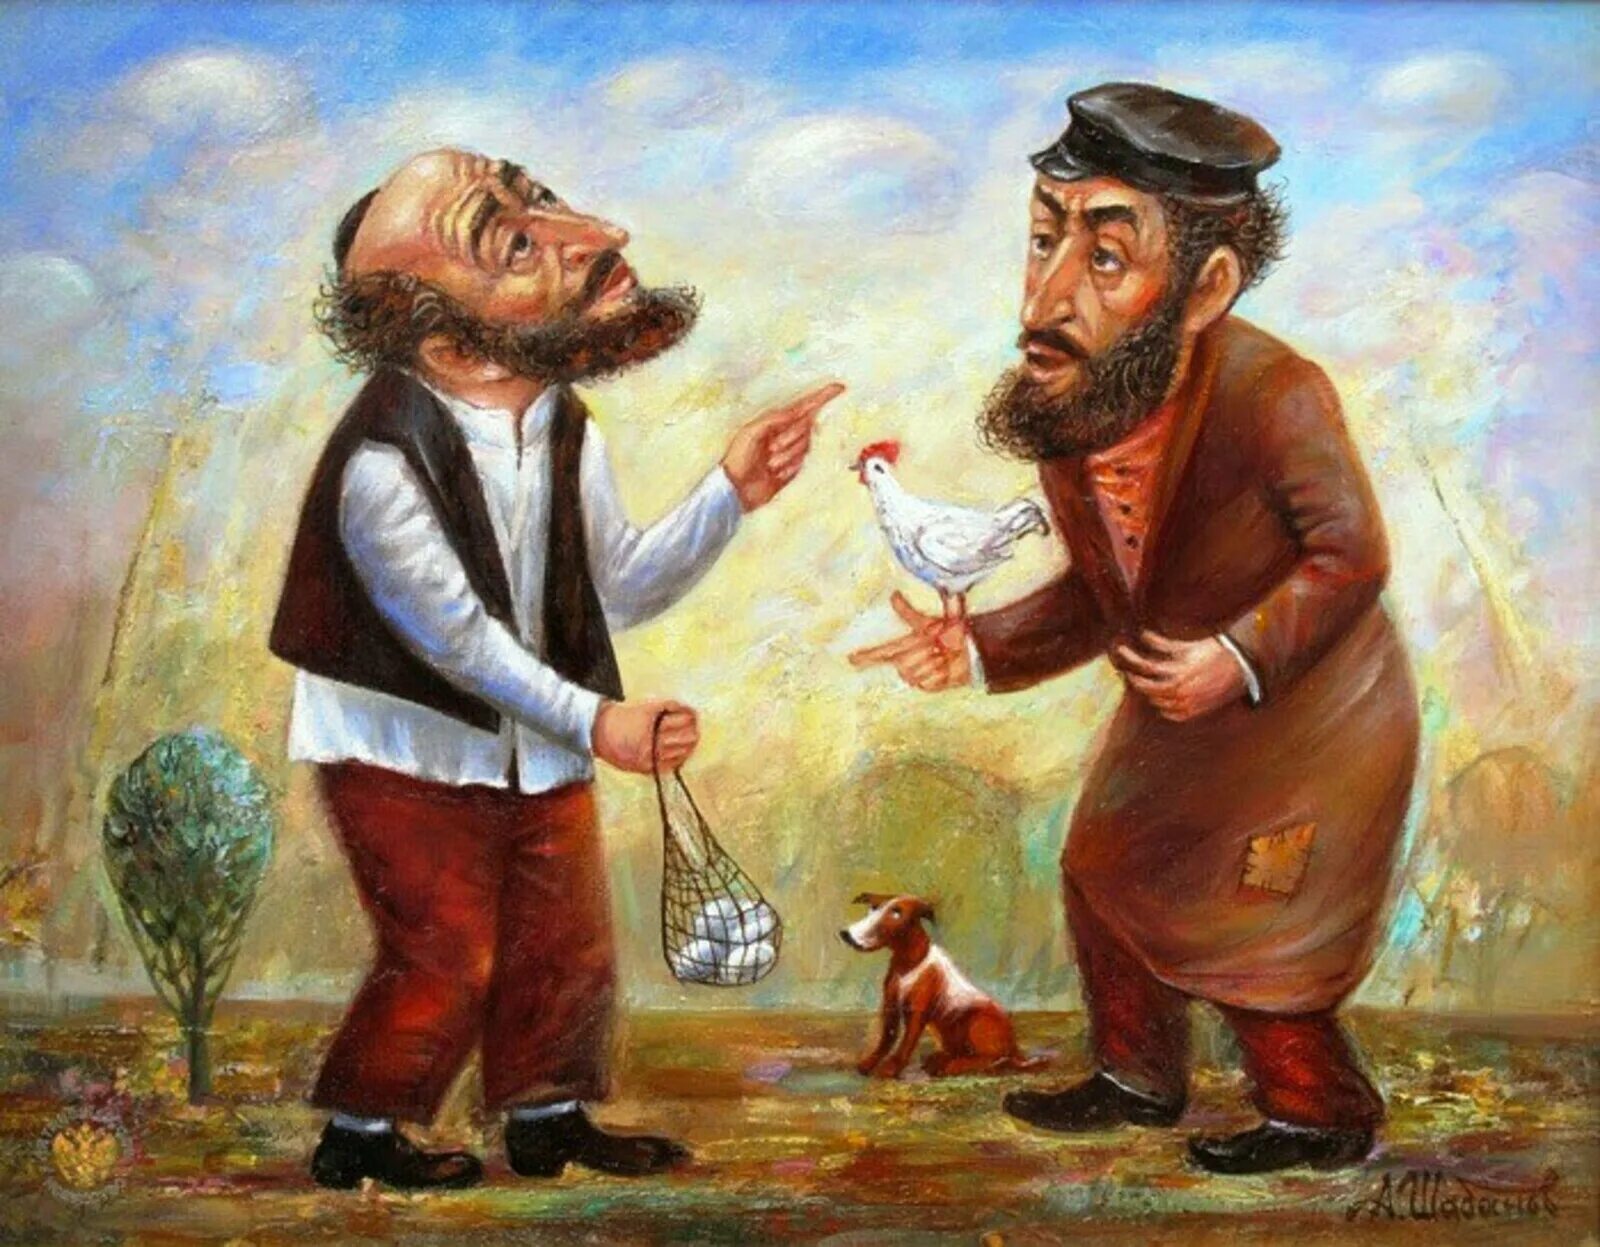 Шабанов художник Еврейская тема. Богатый и бедный еврей мусоргский